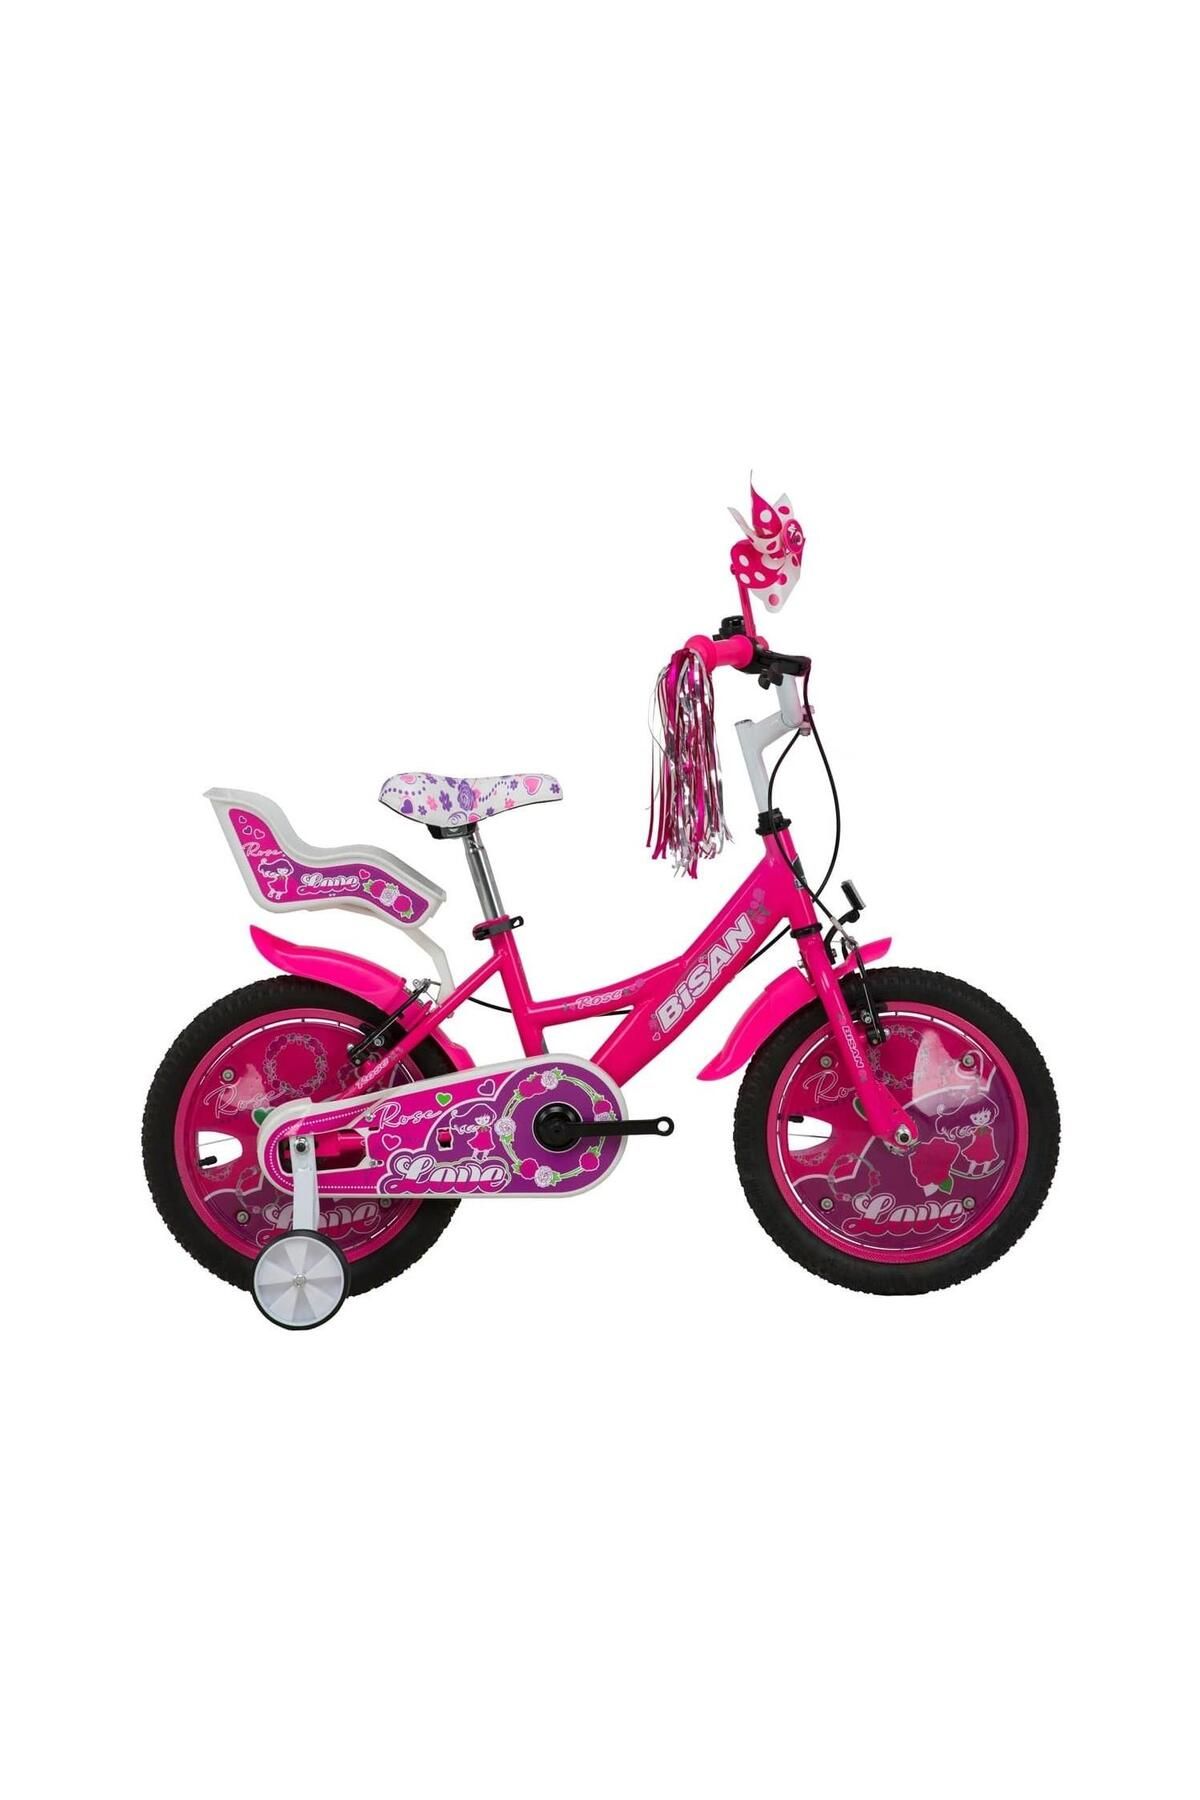 Bisan Rose Kız Çocuk Bisikleti 26cm V 16 Jant Metalik Pembe